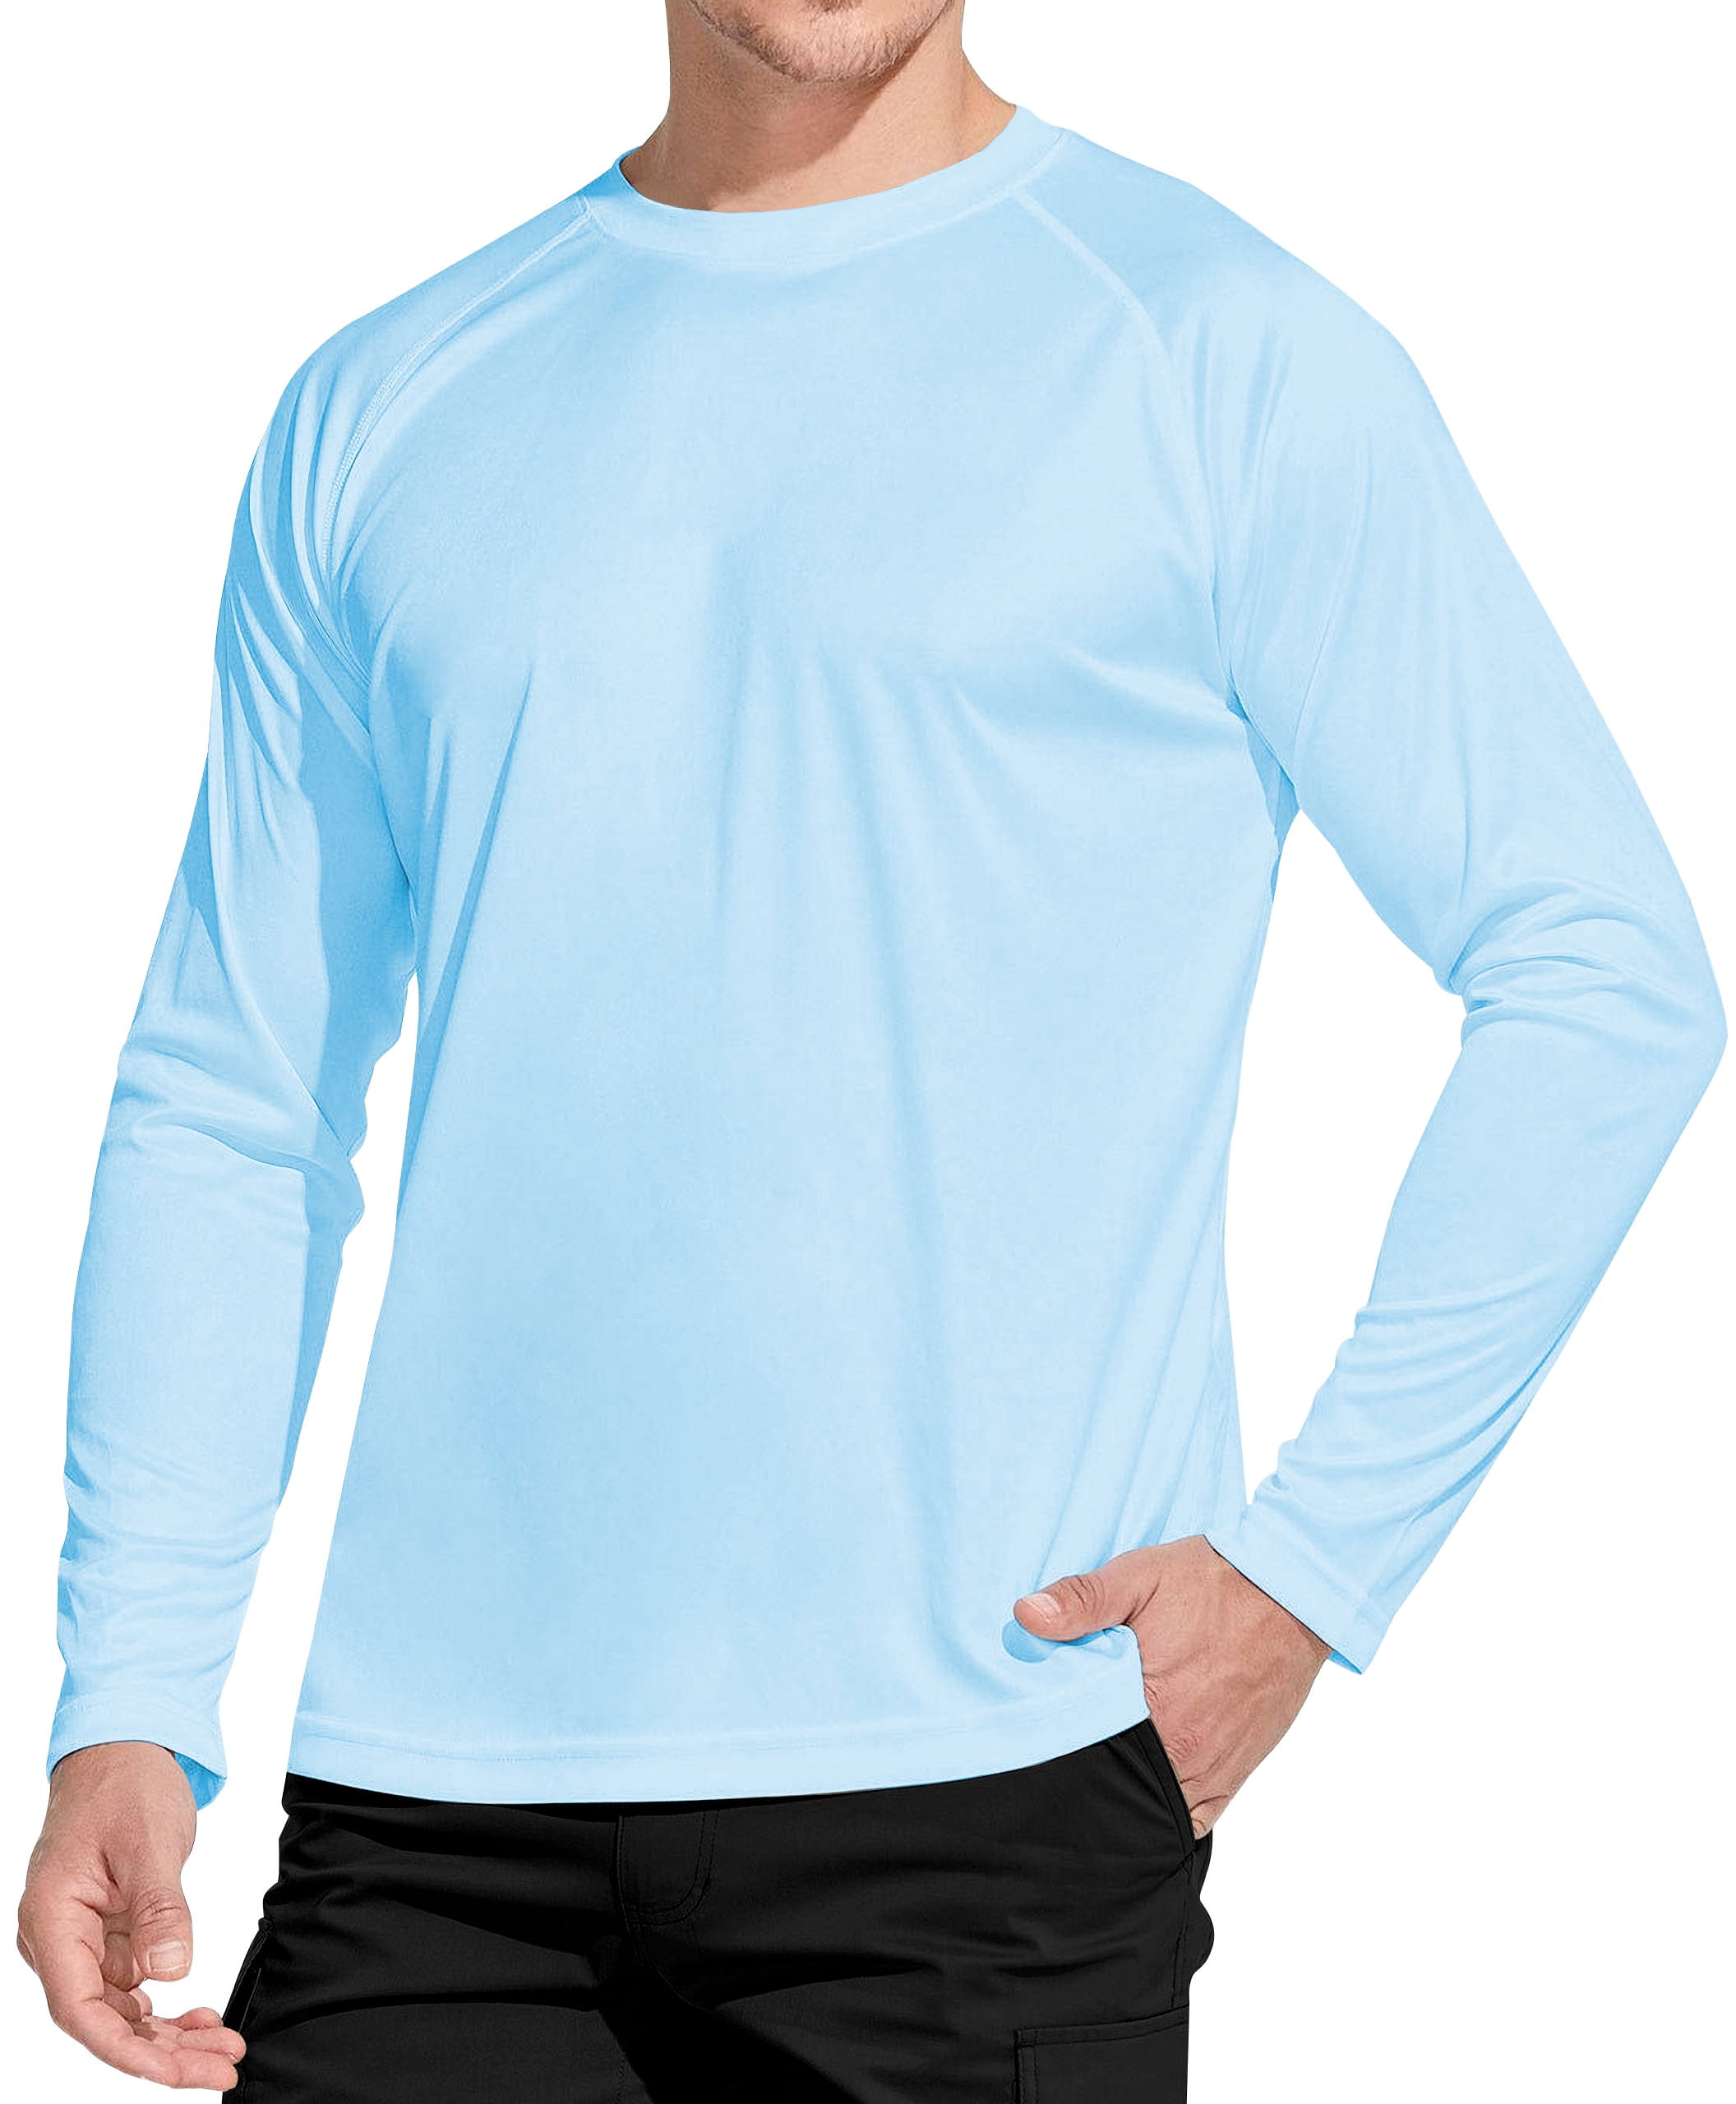 WELIGU Men's Long Sleeve Shirts Lightweight UPF 50+ T-Shirts Fishing Light  Green Size Male Xxxxl